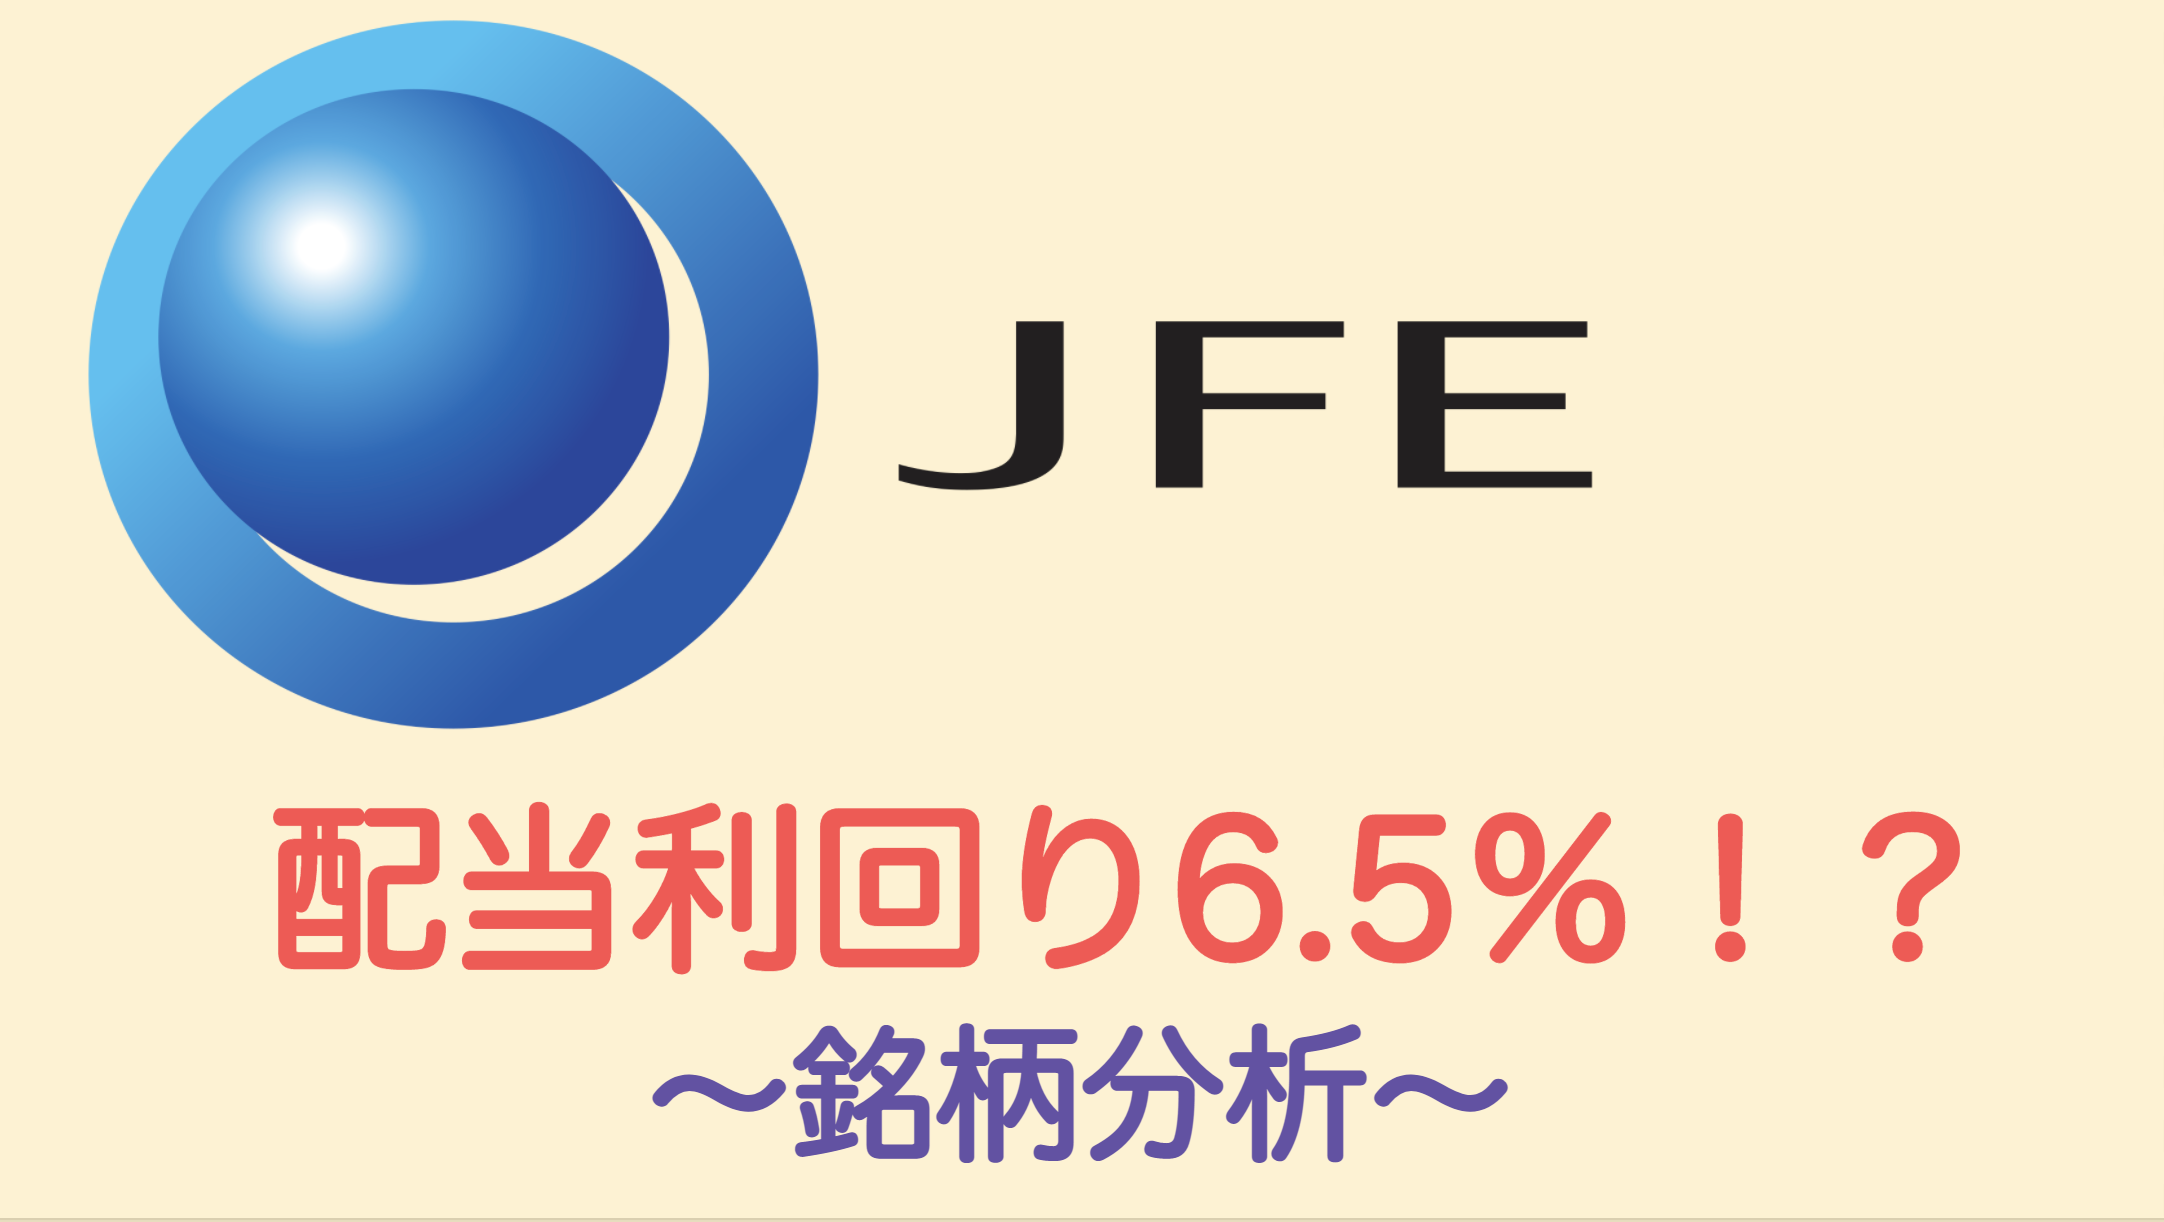 Jfe ホールディングス の 株価